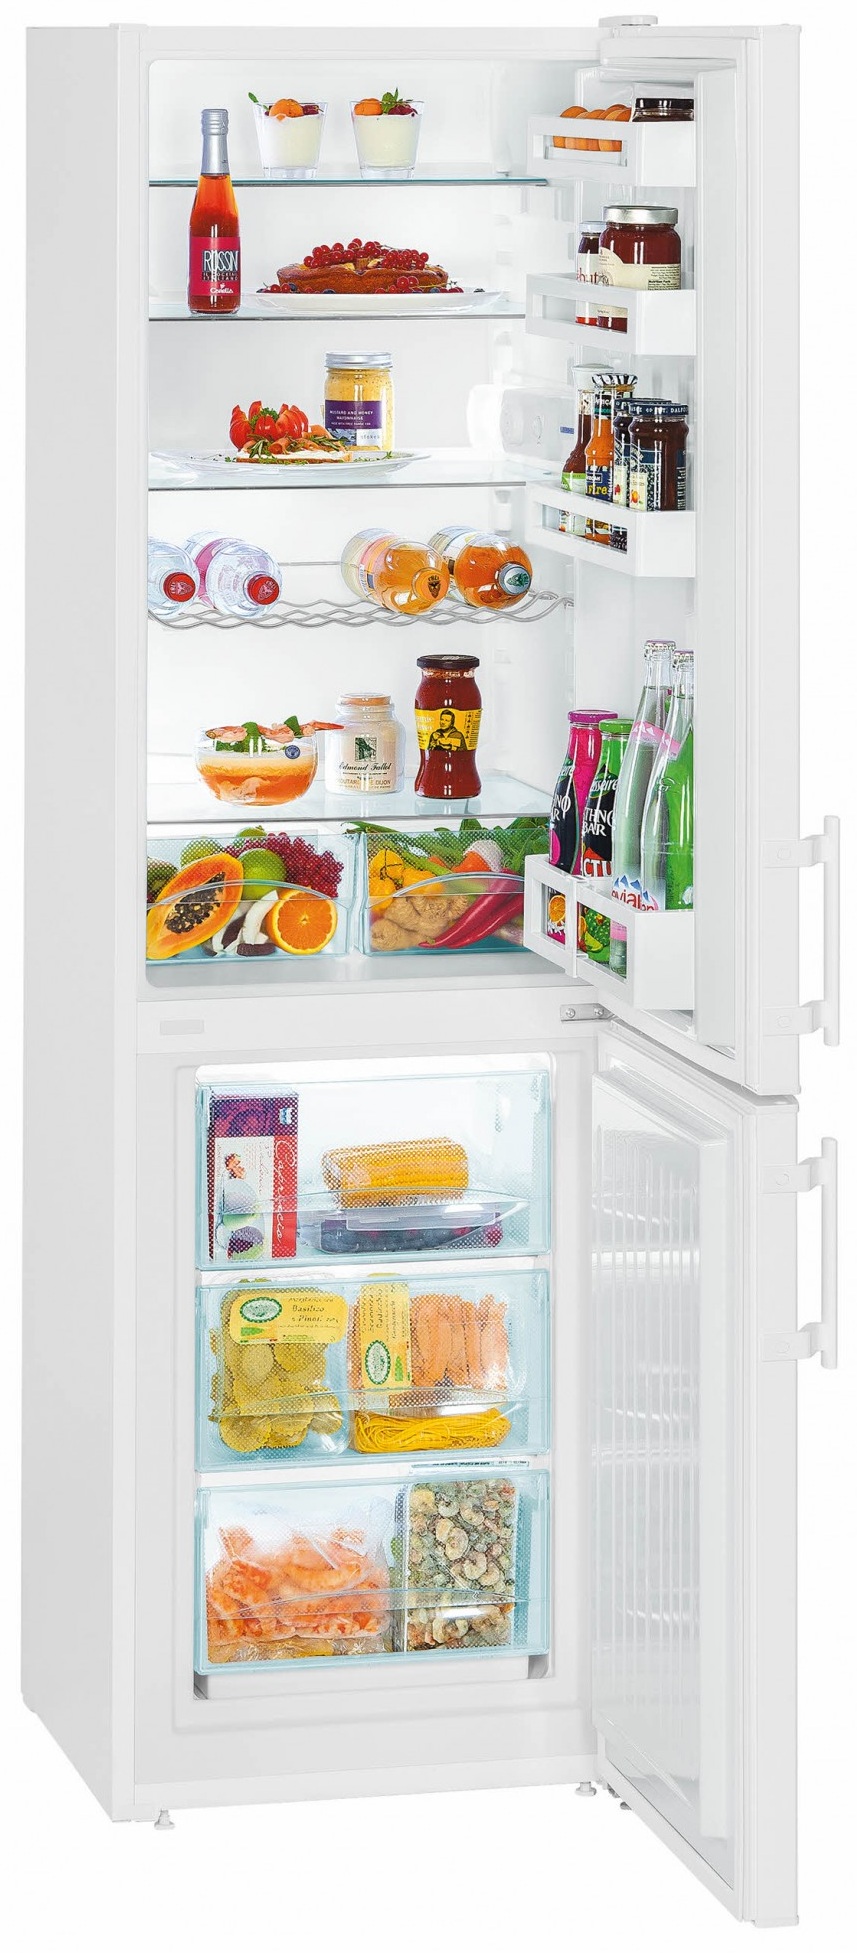 TOP 15 réfrigérateurs de qualité et de fiabilité.Noter les meilleurs fabricants. Lequel préférer? (+ Commentaires)